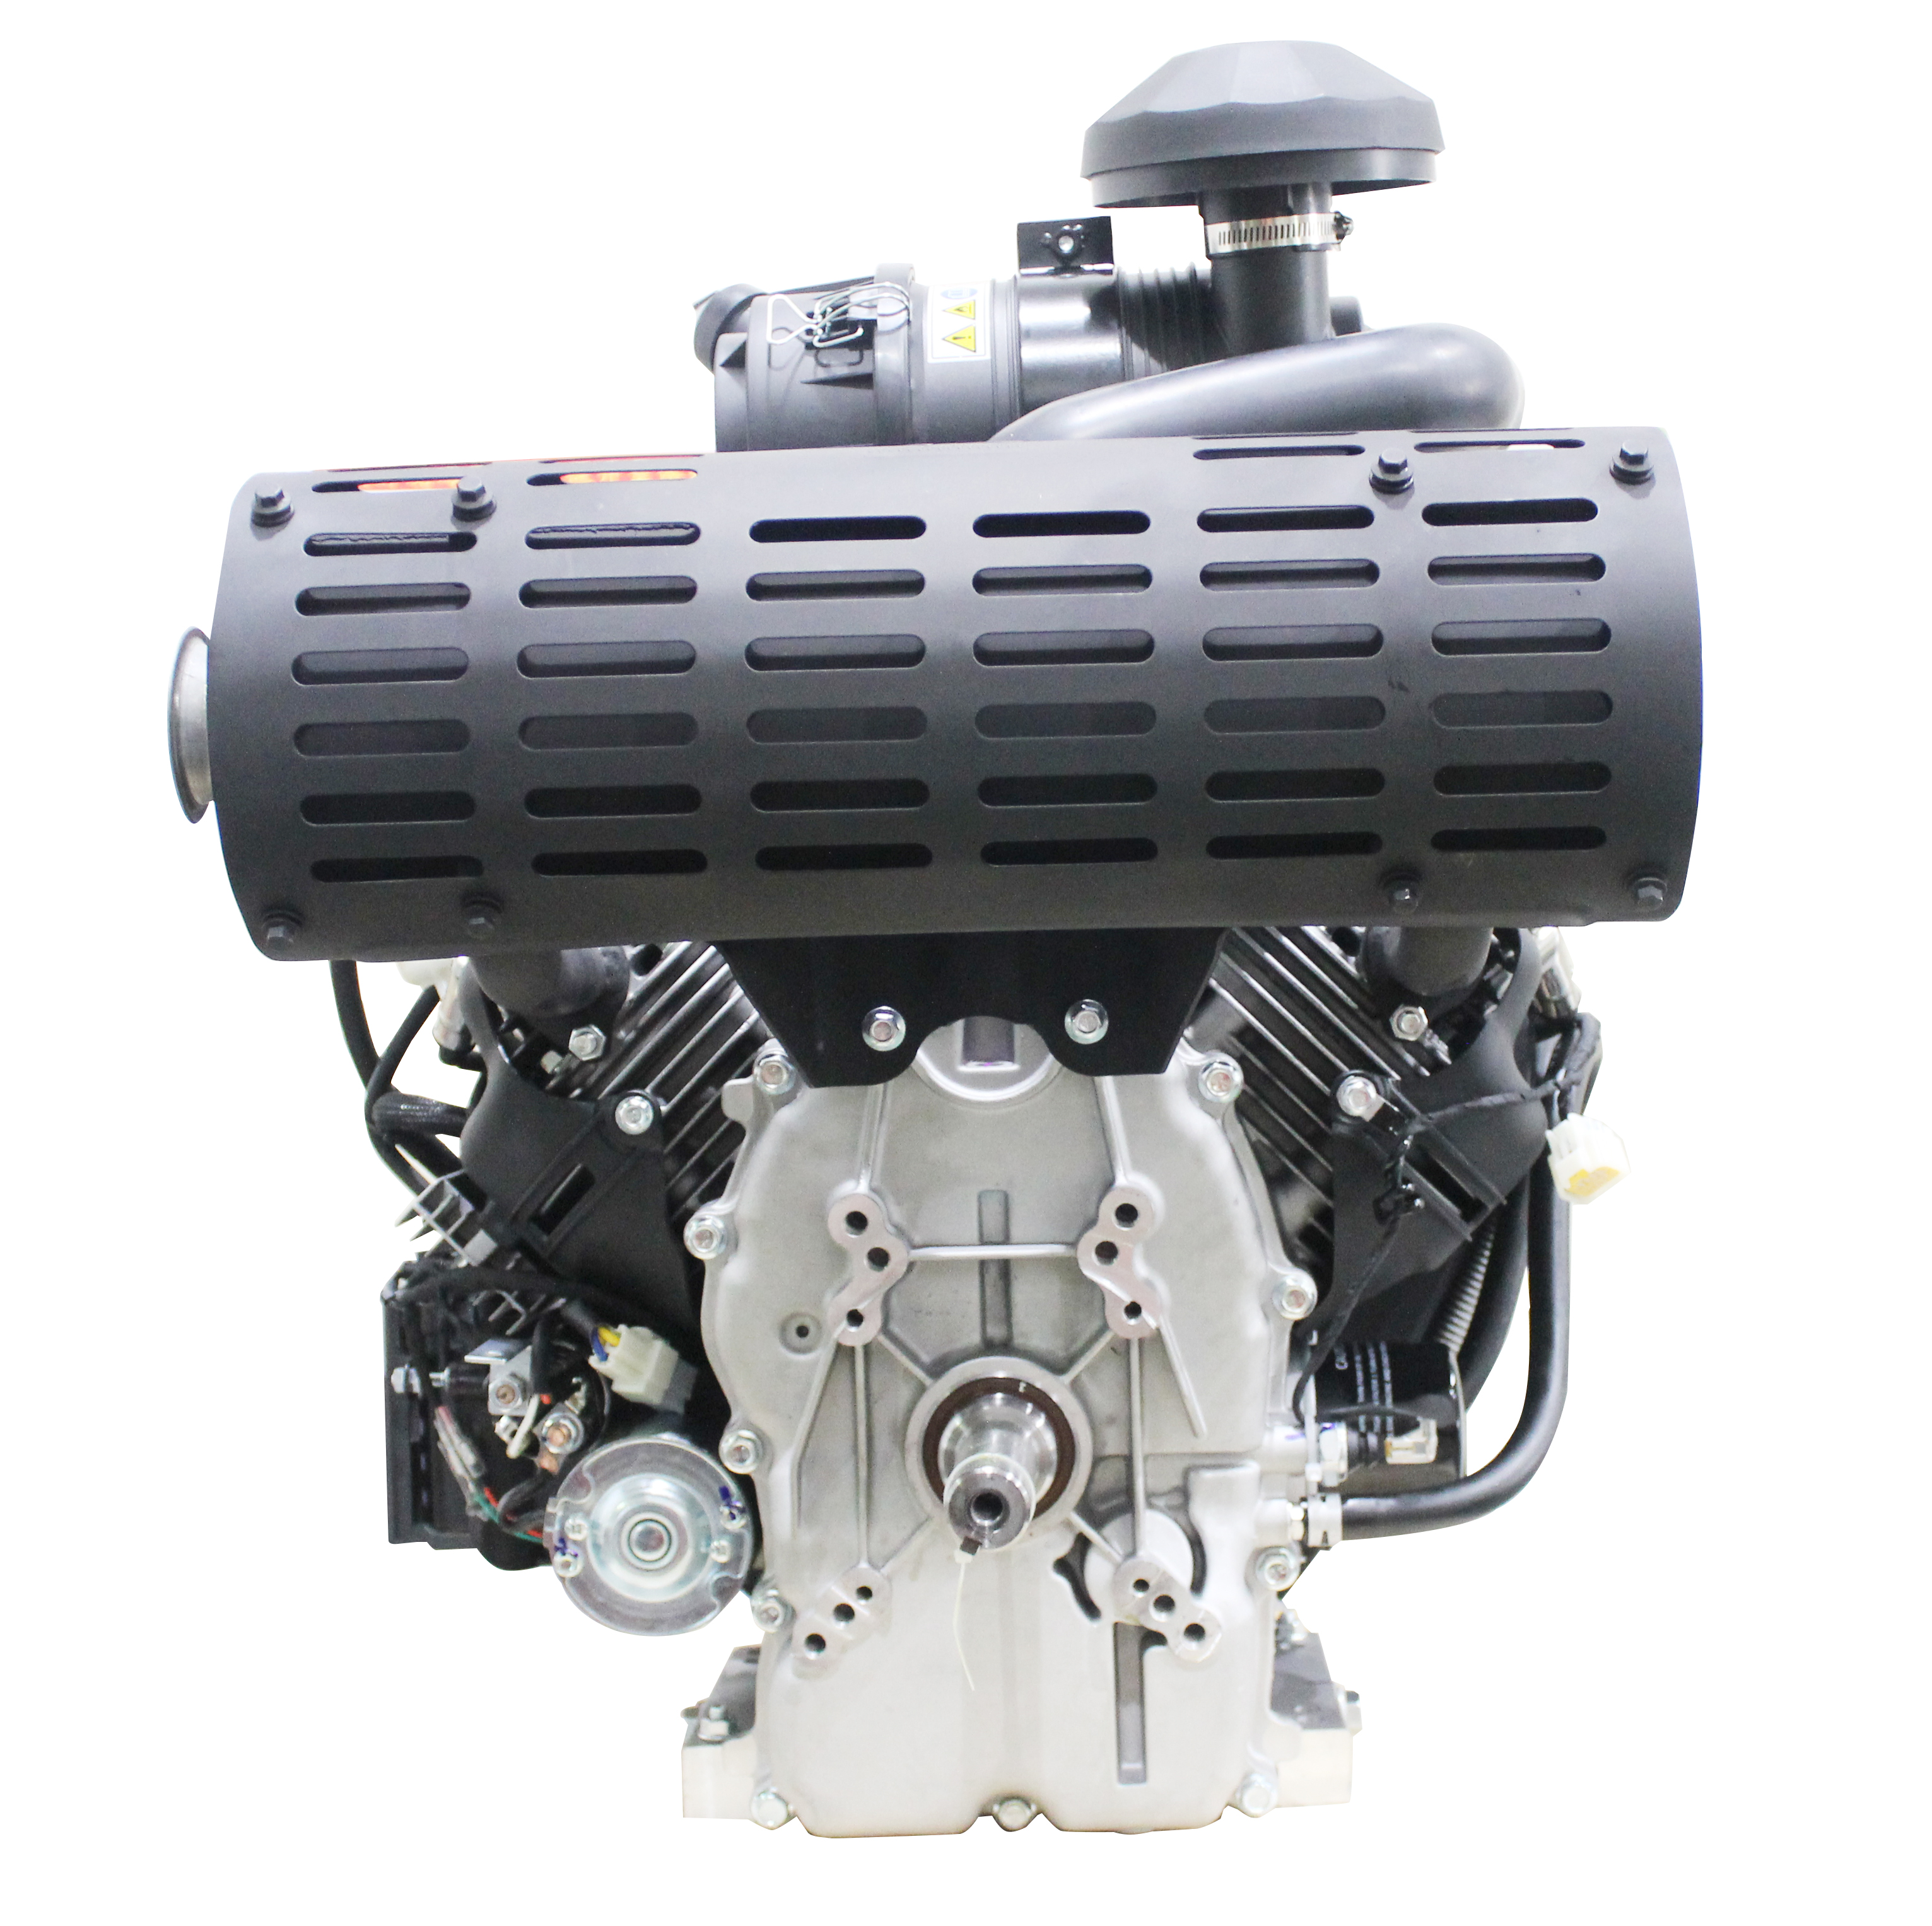 FP1000i 40 PS 999 cc EFI V Doppelbenzinmotor EPA/EURO-V